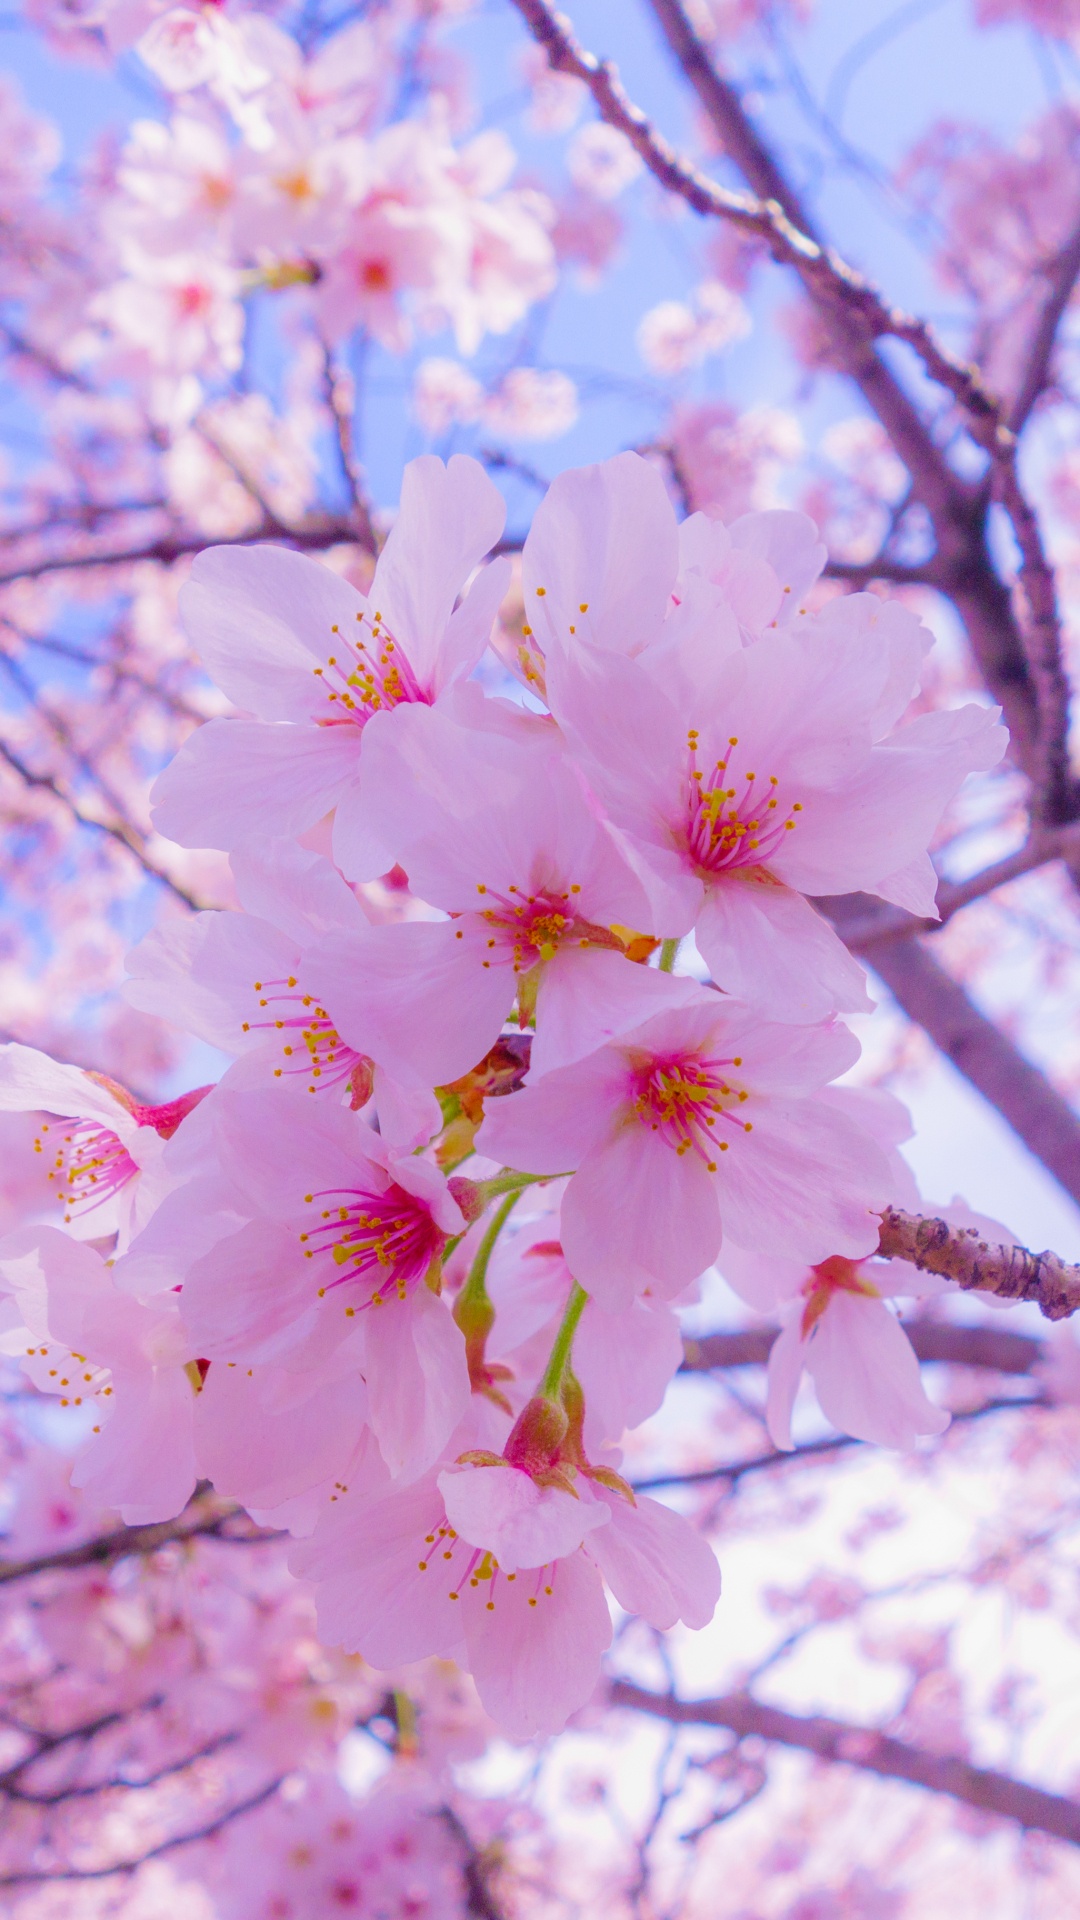 樱花, 开花, 粉红色, 弹簧, 树枝 壁纸 1080x1920 允许